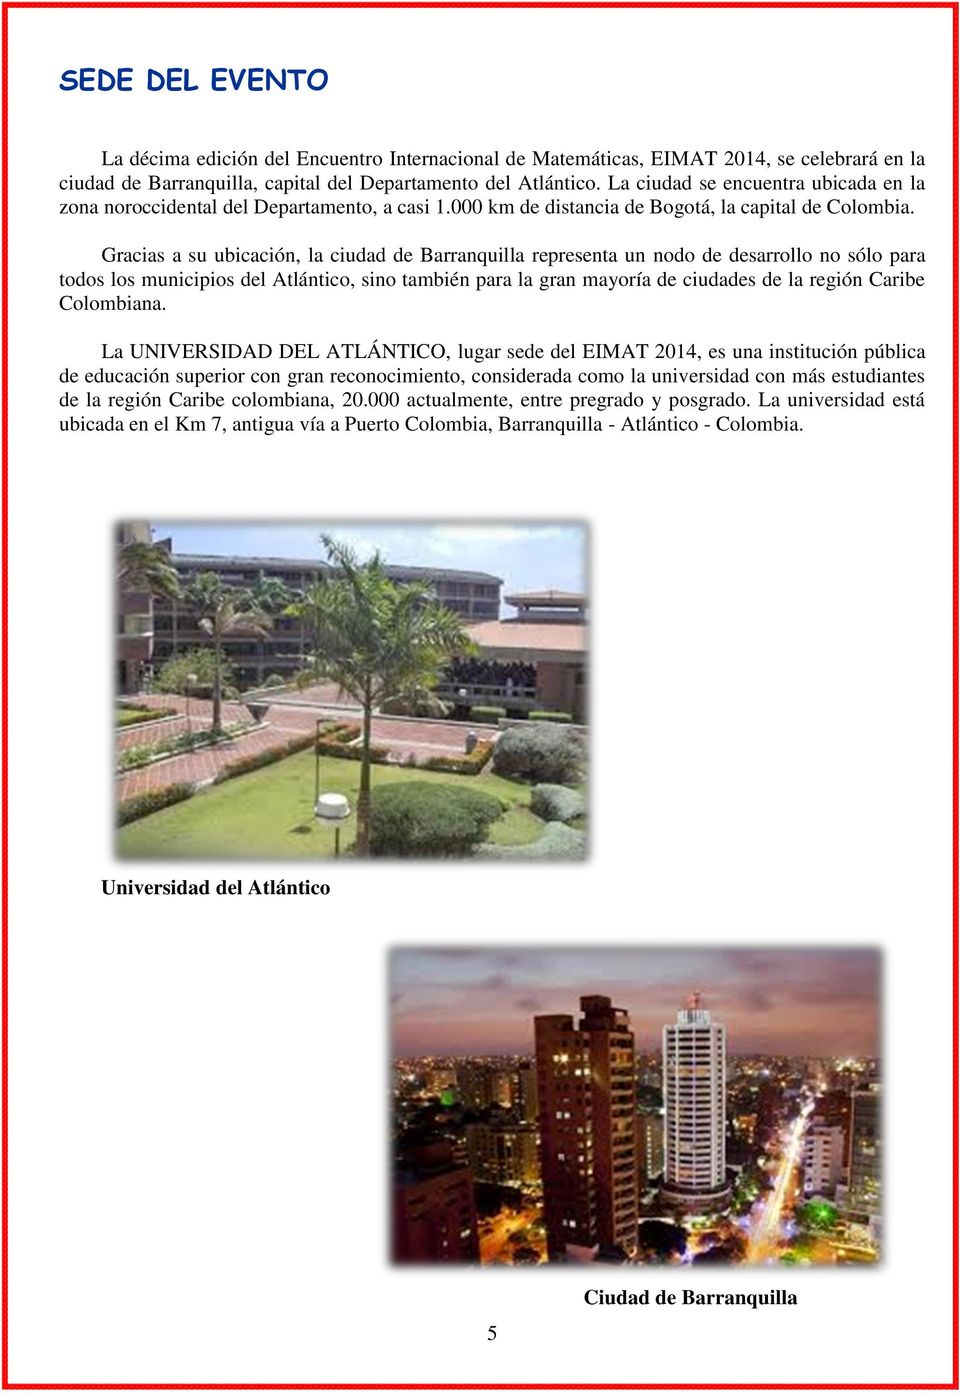 Gracias a su ubicación, la ciudad de Barranquilla representa un nodo de desarrollo no sólo para todos los municipios del Atlántico, sino también para la gran mayoría de ciudades de la región Caribe